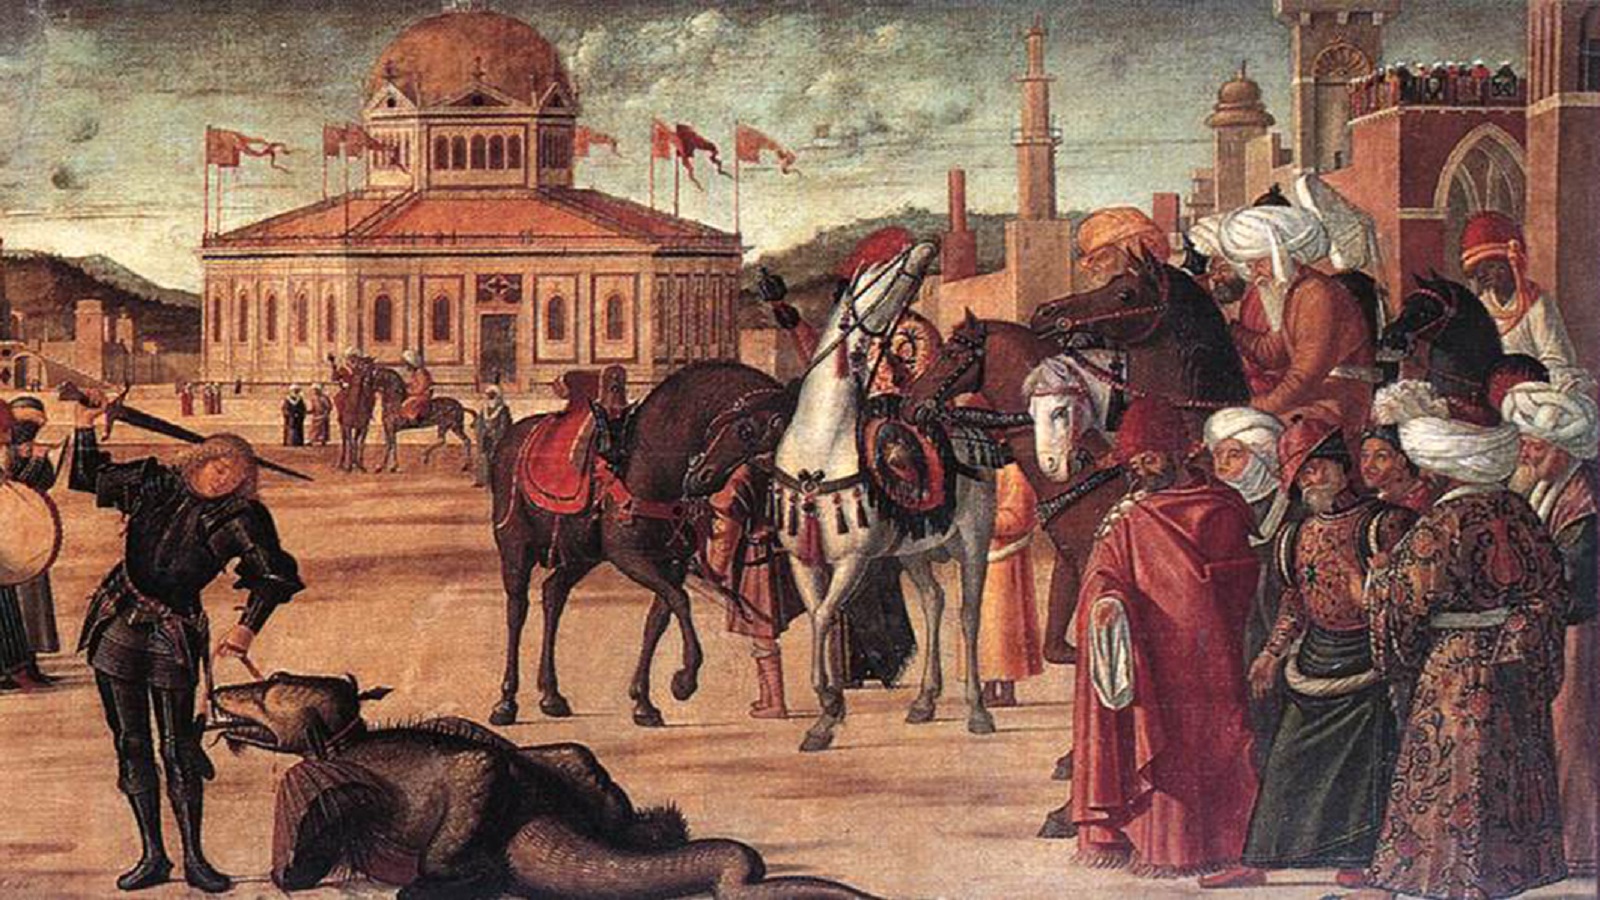 تفصيل من لوحة دخول القديس جاورجيوس إلى المدينة الليبية.